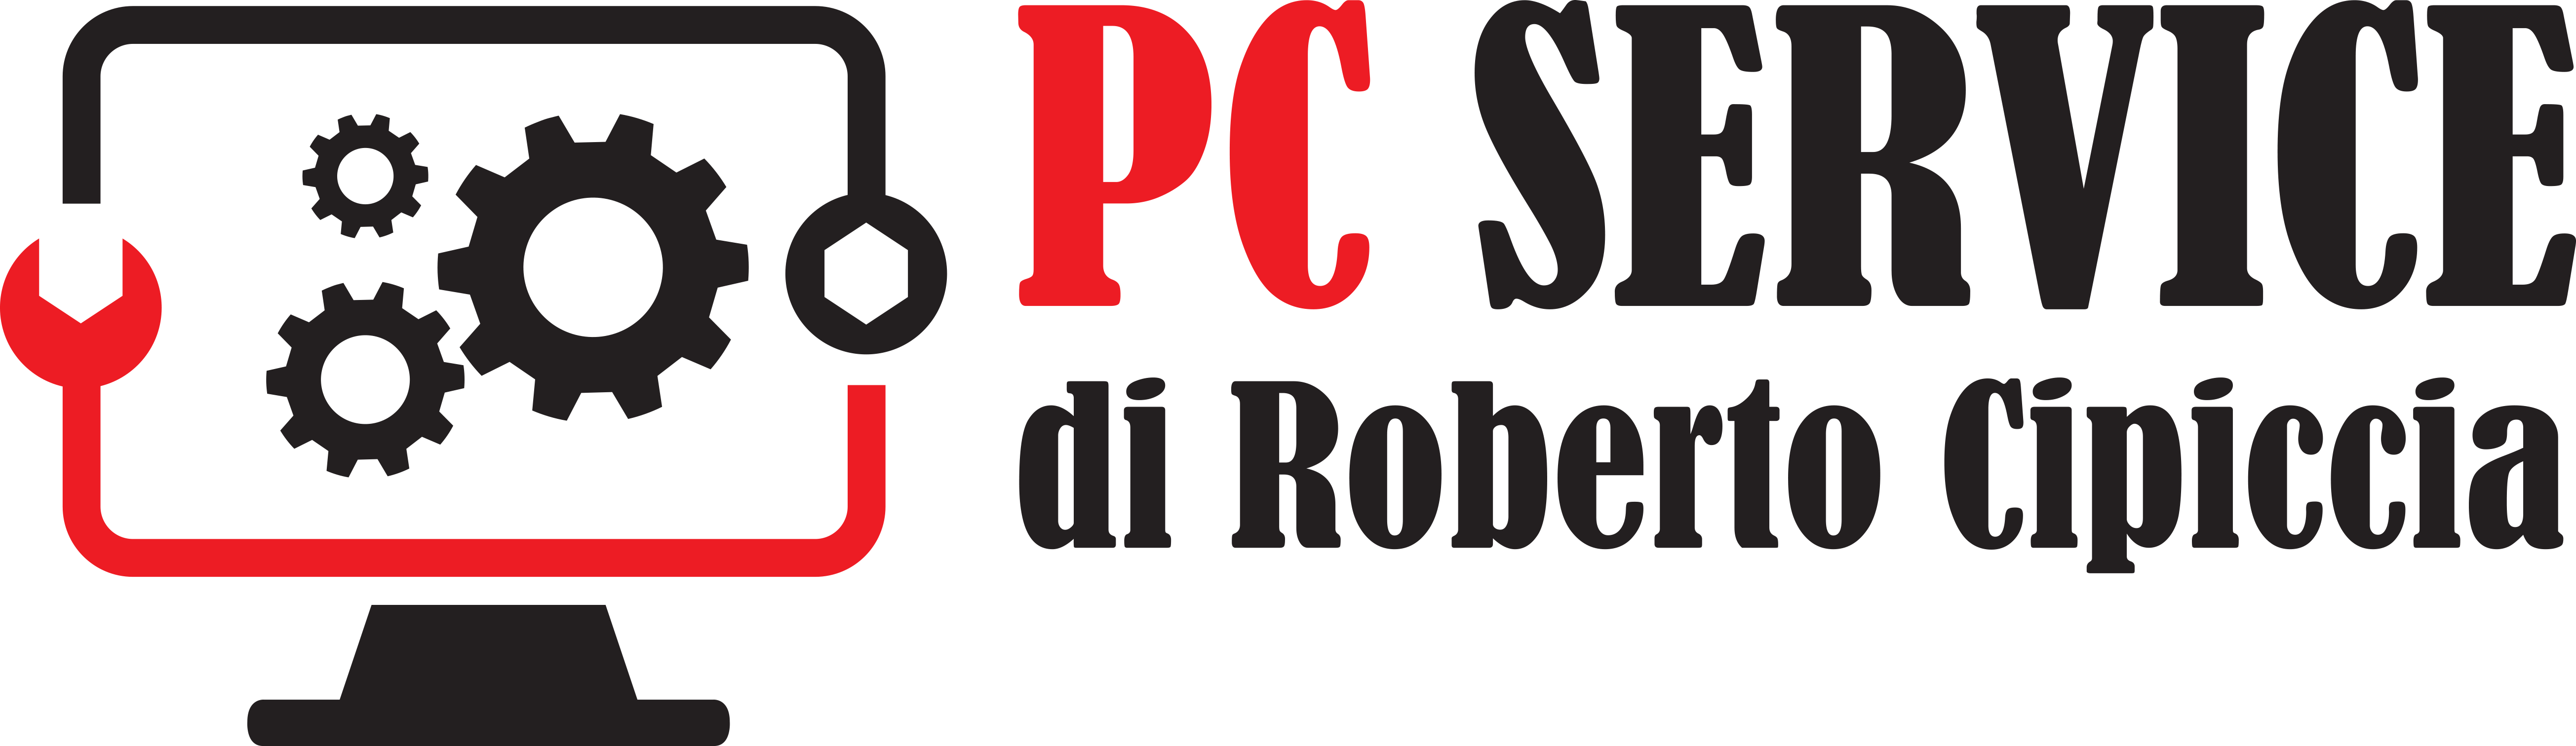 PC SERVICE DI CIPICCIA ROBERTO